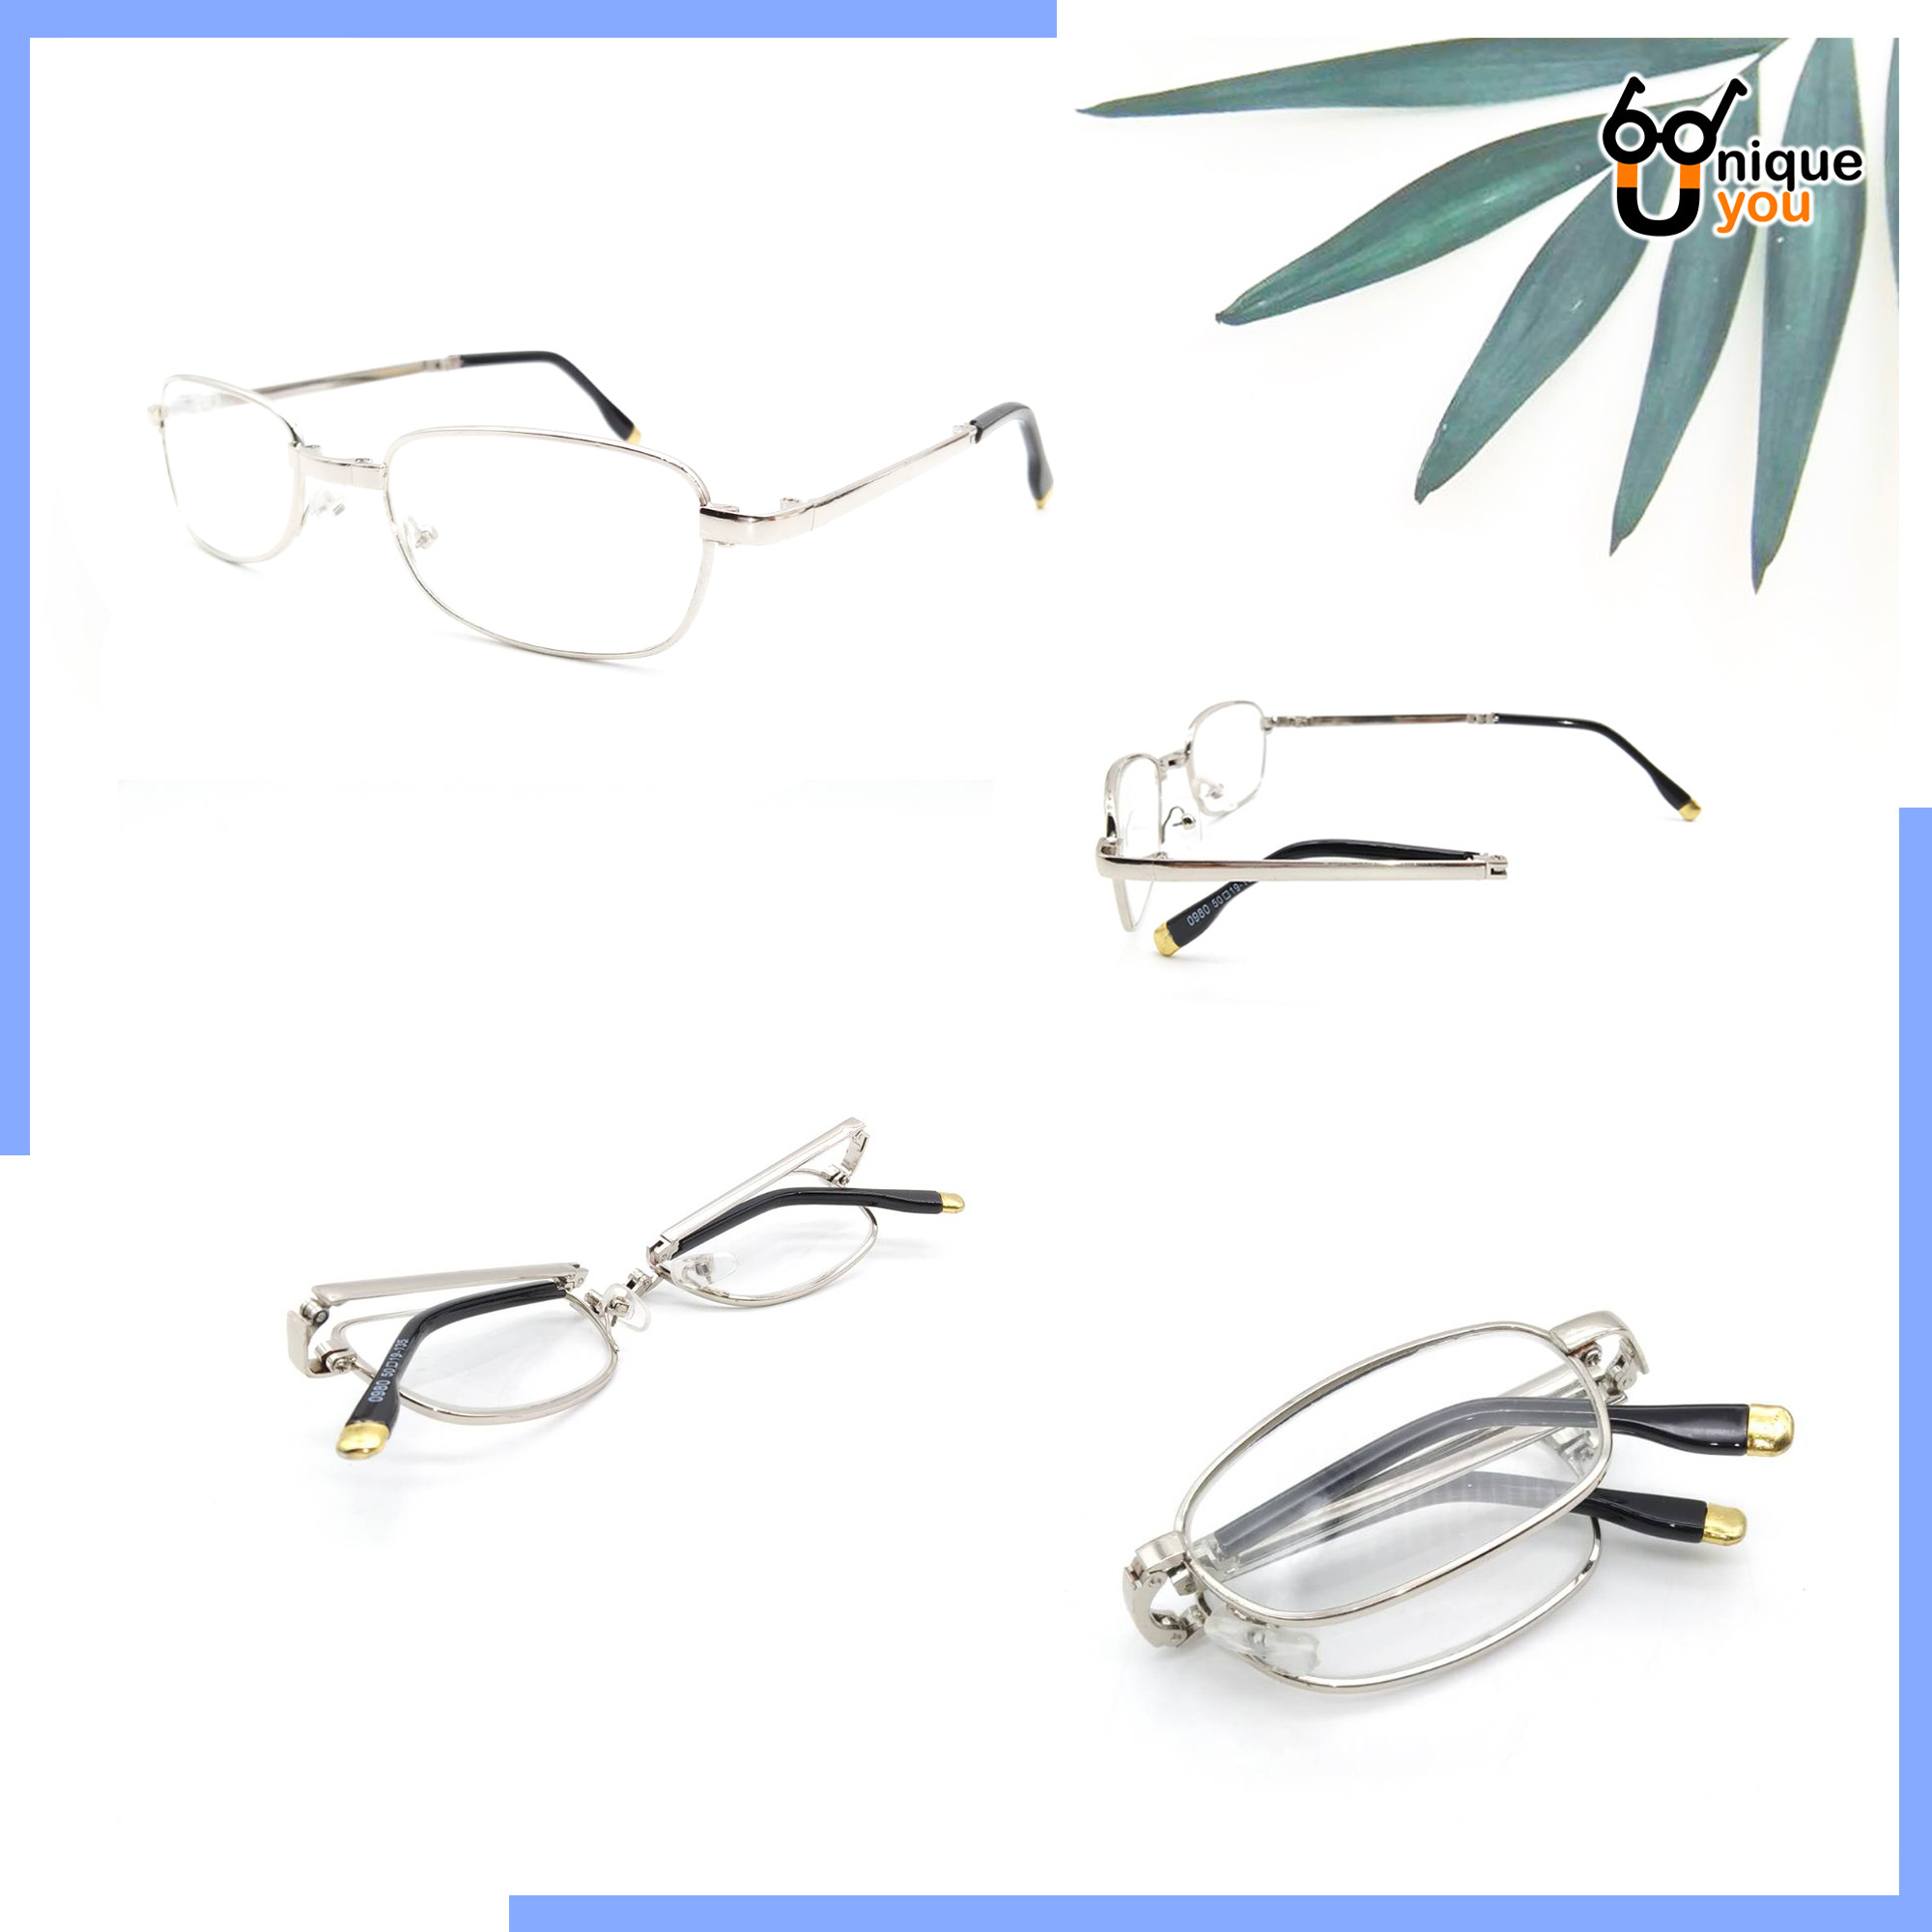 ภาพอธิบายเพิ่มเติมของ Uniq แว่นสายตายยาว พับได้ เลนส์กระจก แว่สายตากรอบแว่นพับได้ แว่นตาพับได้ แว่นสำหรับอ่านหนังสือ แว่นผู้สูงอายุ แว่นสายตาสำหรับอ่านหนอ